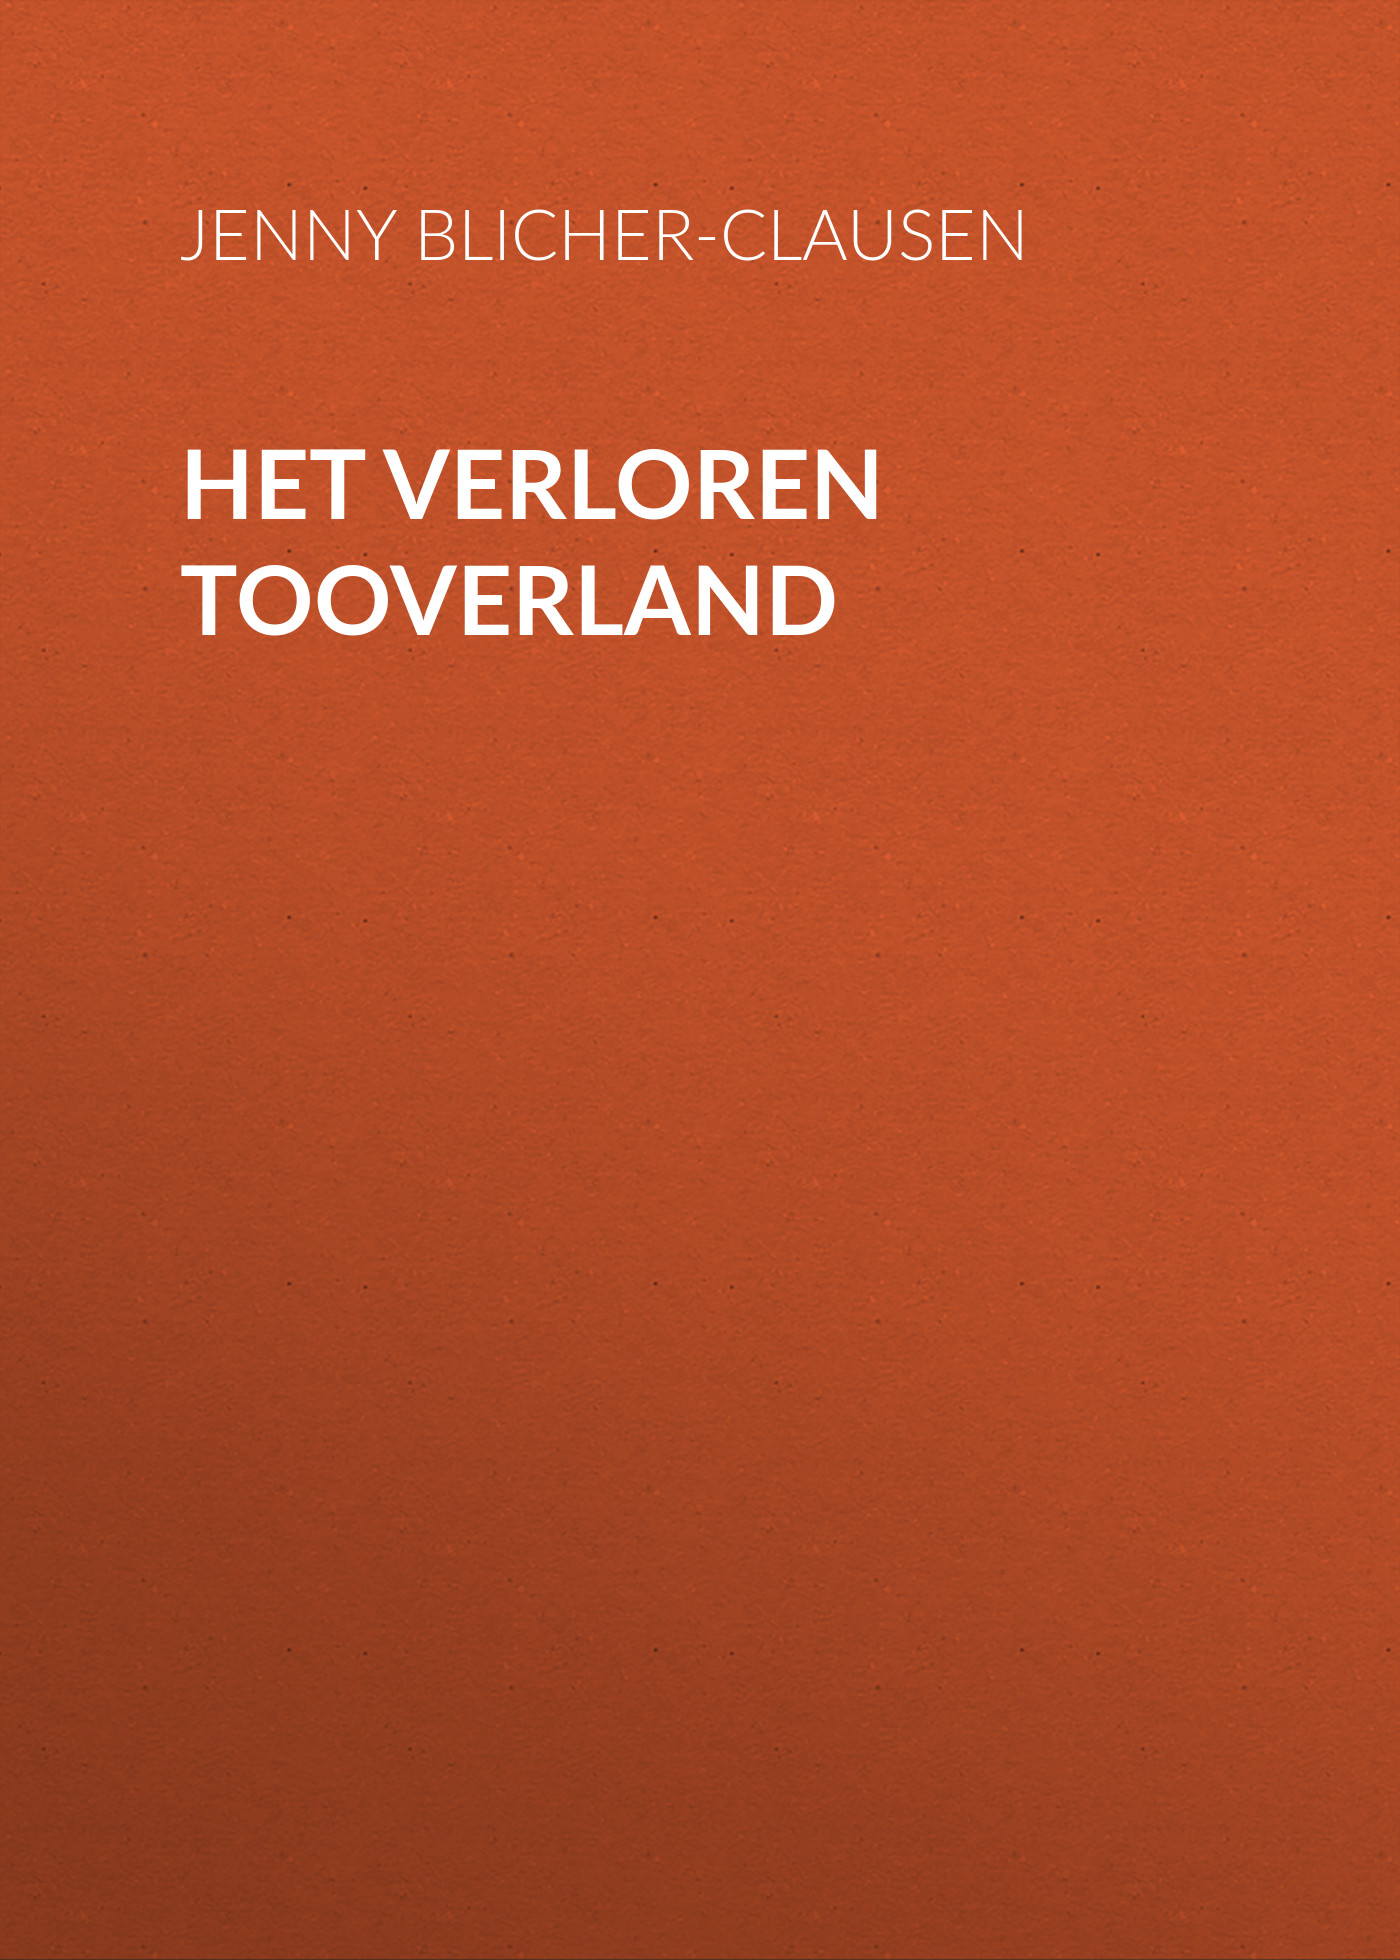 Книга Het Verloren Tooverland из серии , созданная Jenny Blicher-Clausen, может относится к жанру Зарубежная классика, Зарубежная старинная литература. Стоимость электронной книги Het Verloren Tooverland с идентификатором 24178884 составляет 0 руб.